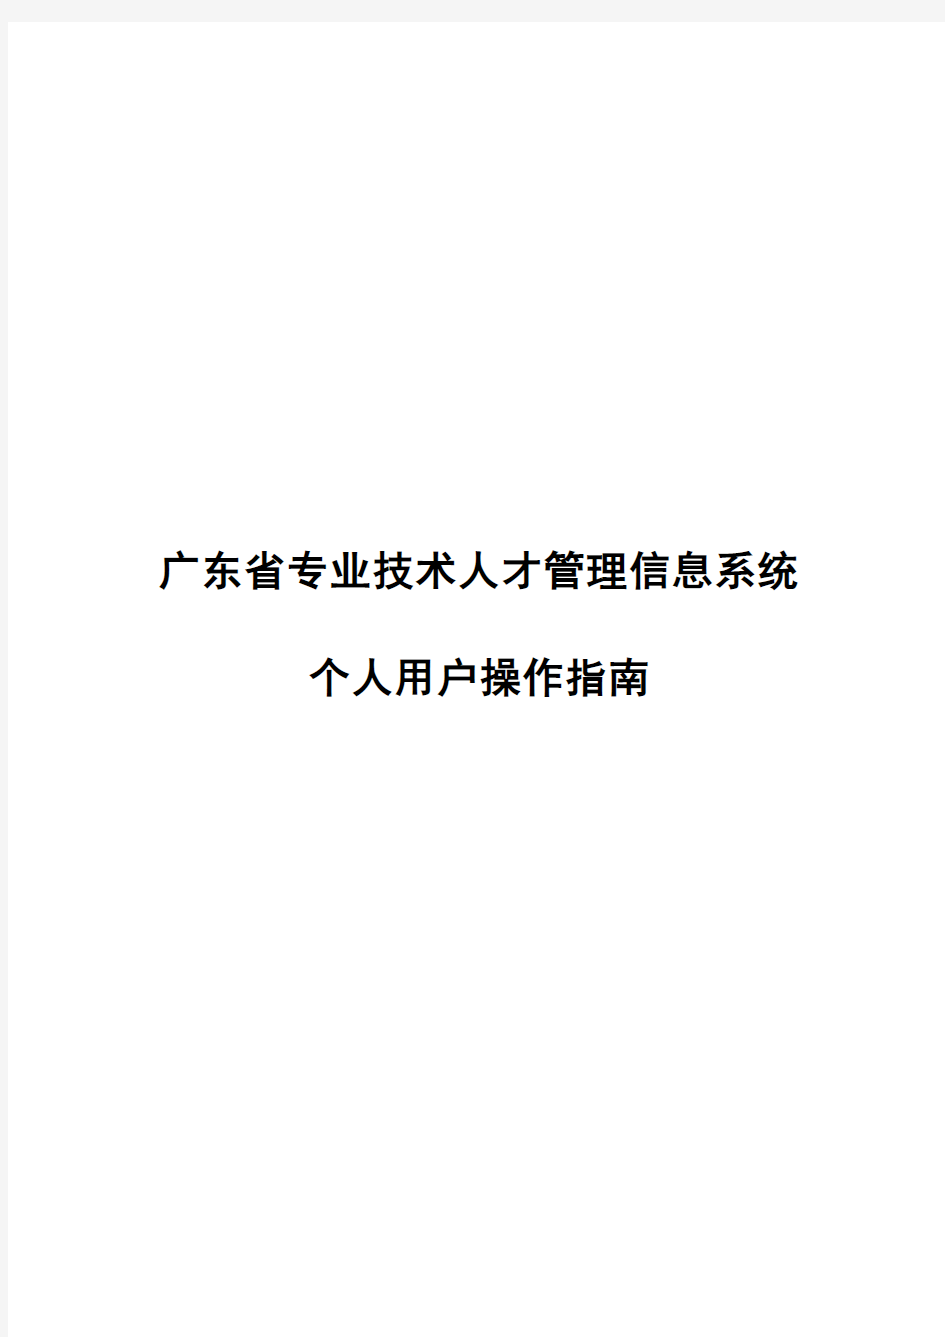 广东省职称评审申报系统个人操作指引